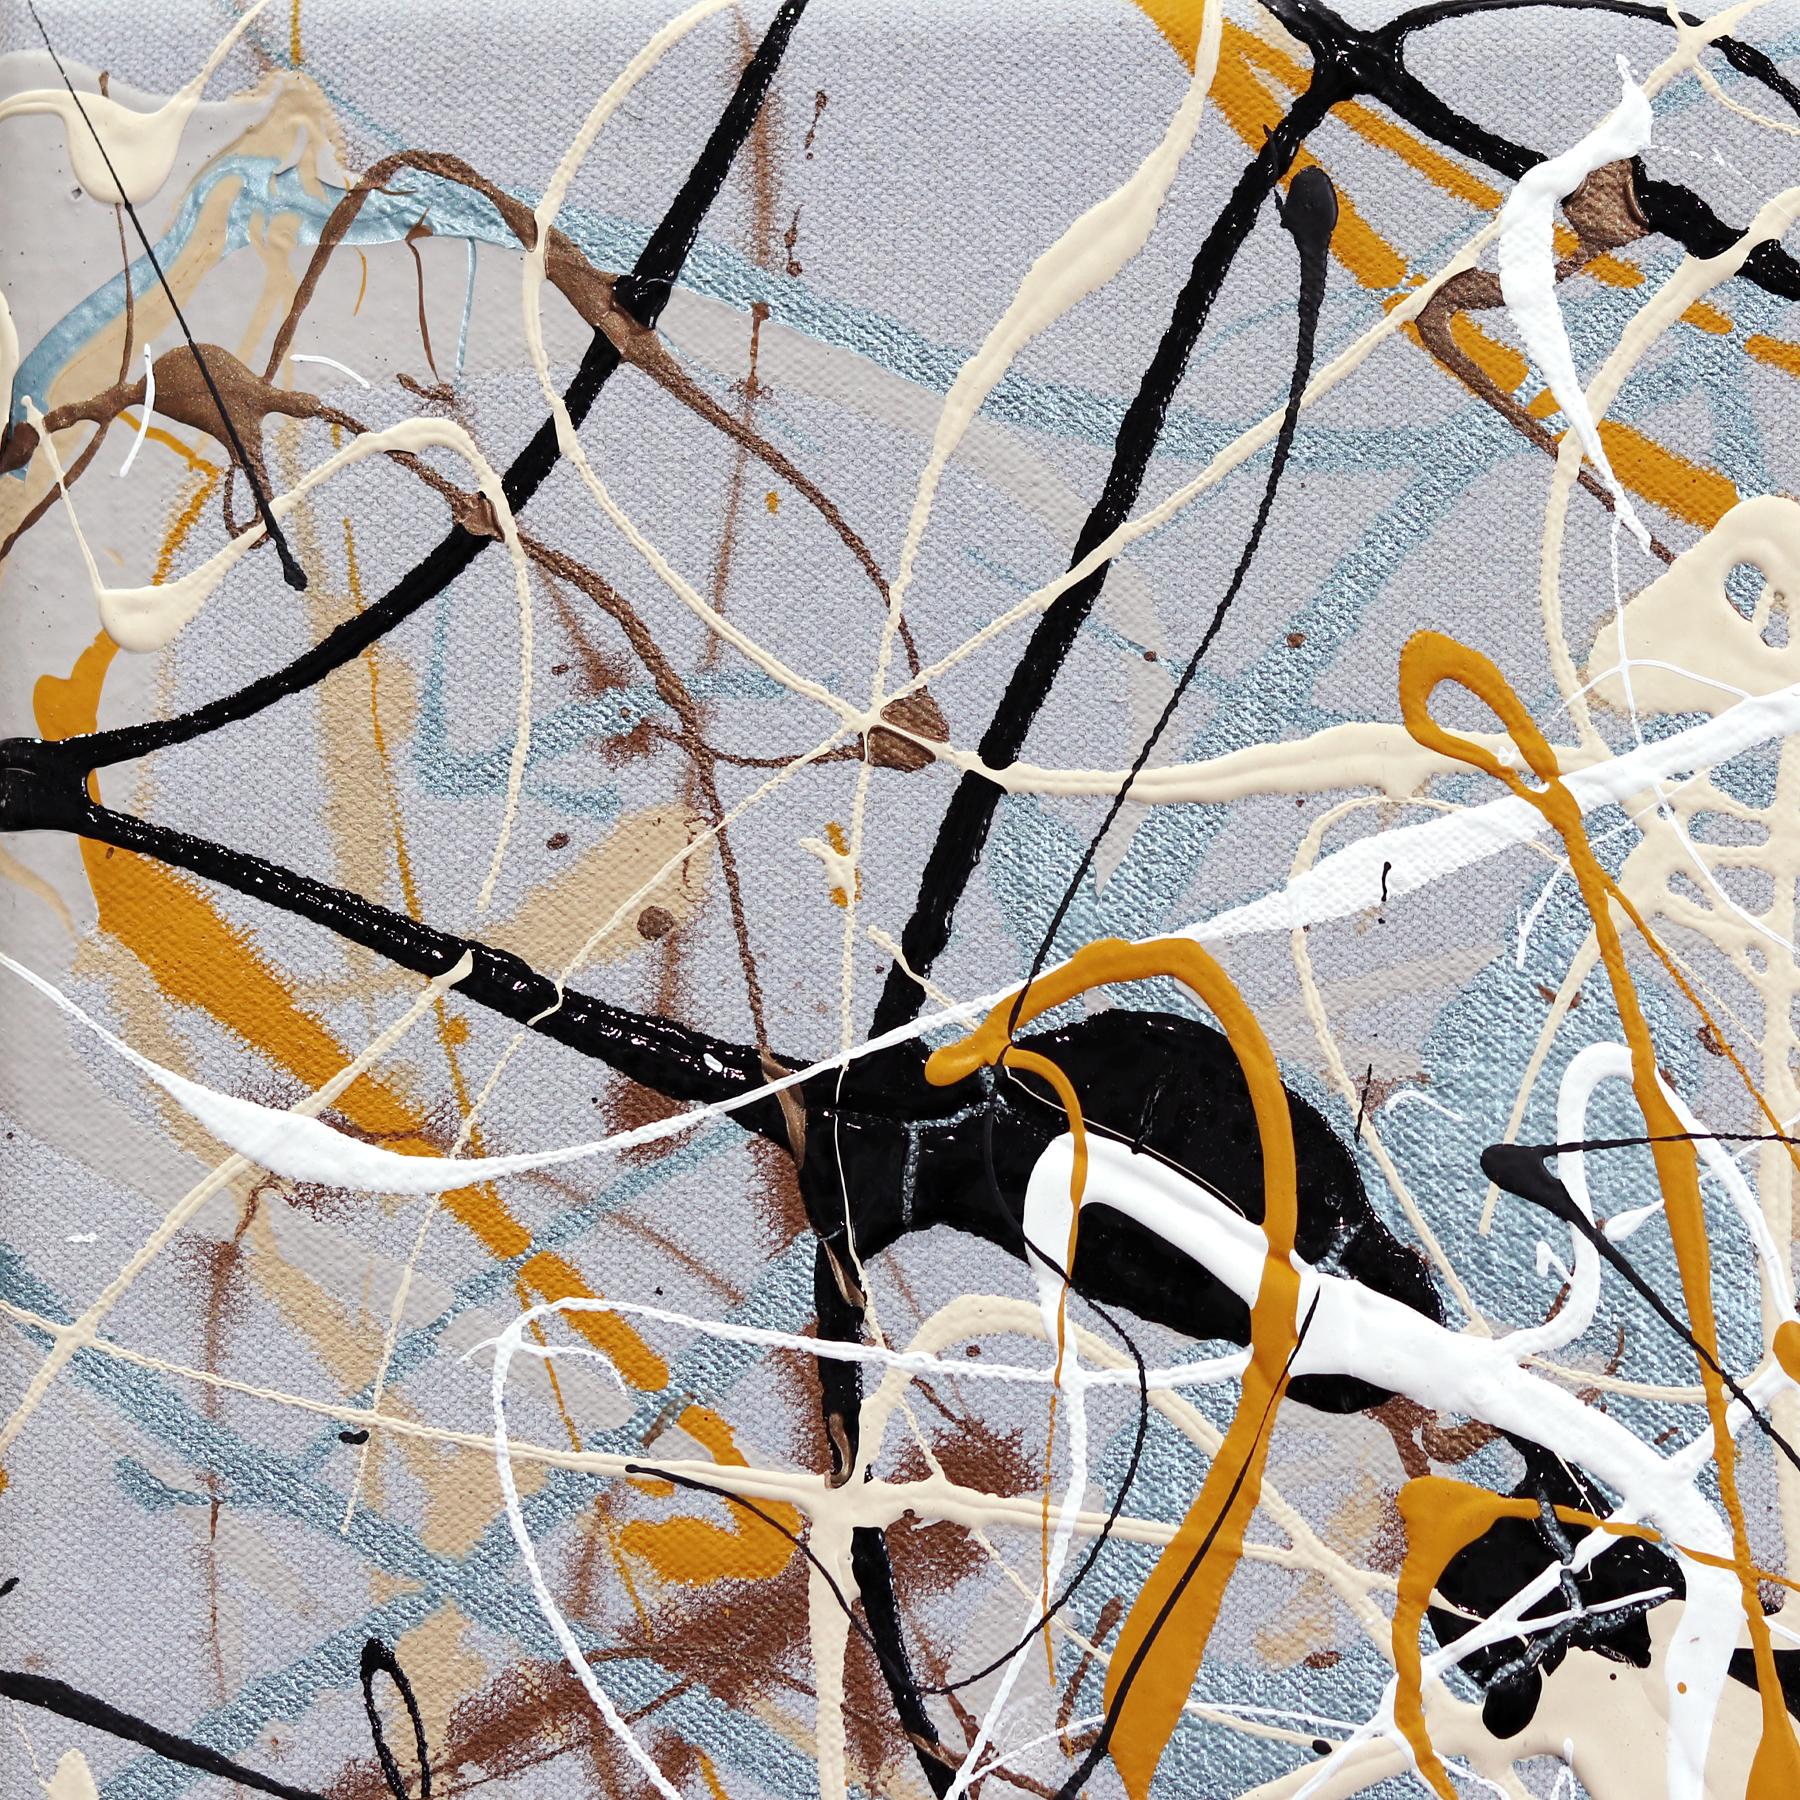 Der in Los Angeles lebende Künstler Marc Raphael besticht durch seine abstrakten expressionistischen Gemälde, die von der abstrakten expressionistischen Bewegung in New York beeinflusst sind. Nachdem er in den 90er Jahren zum ersten Mal auf Jackson